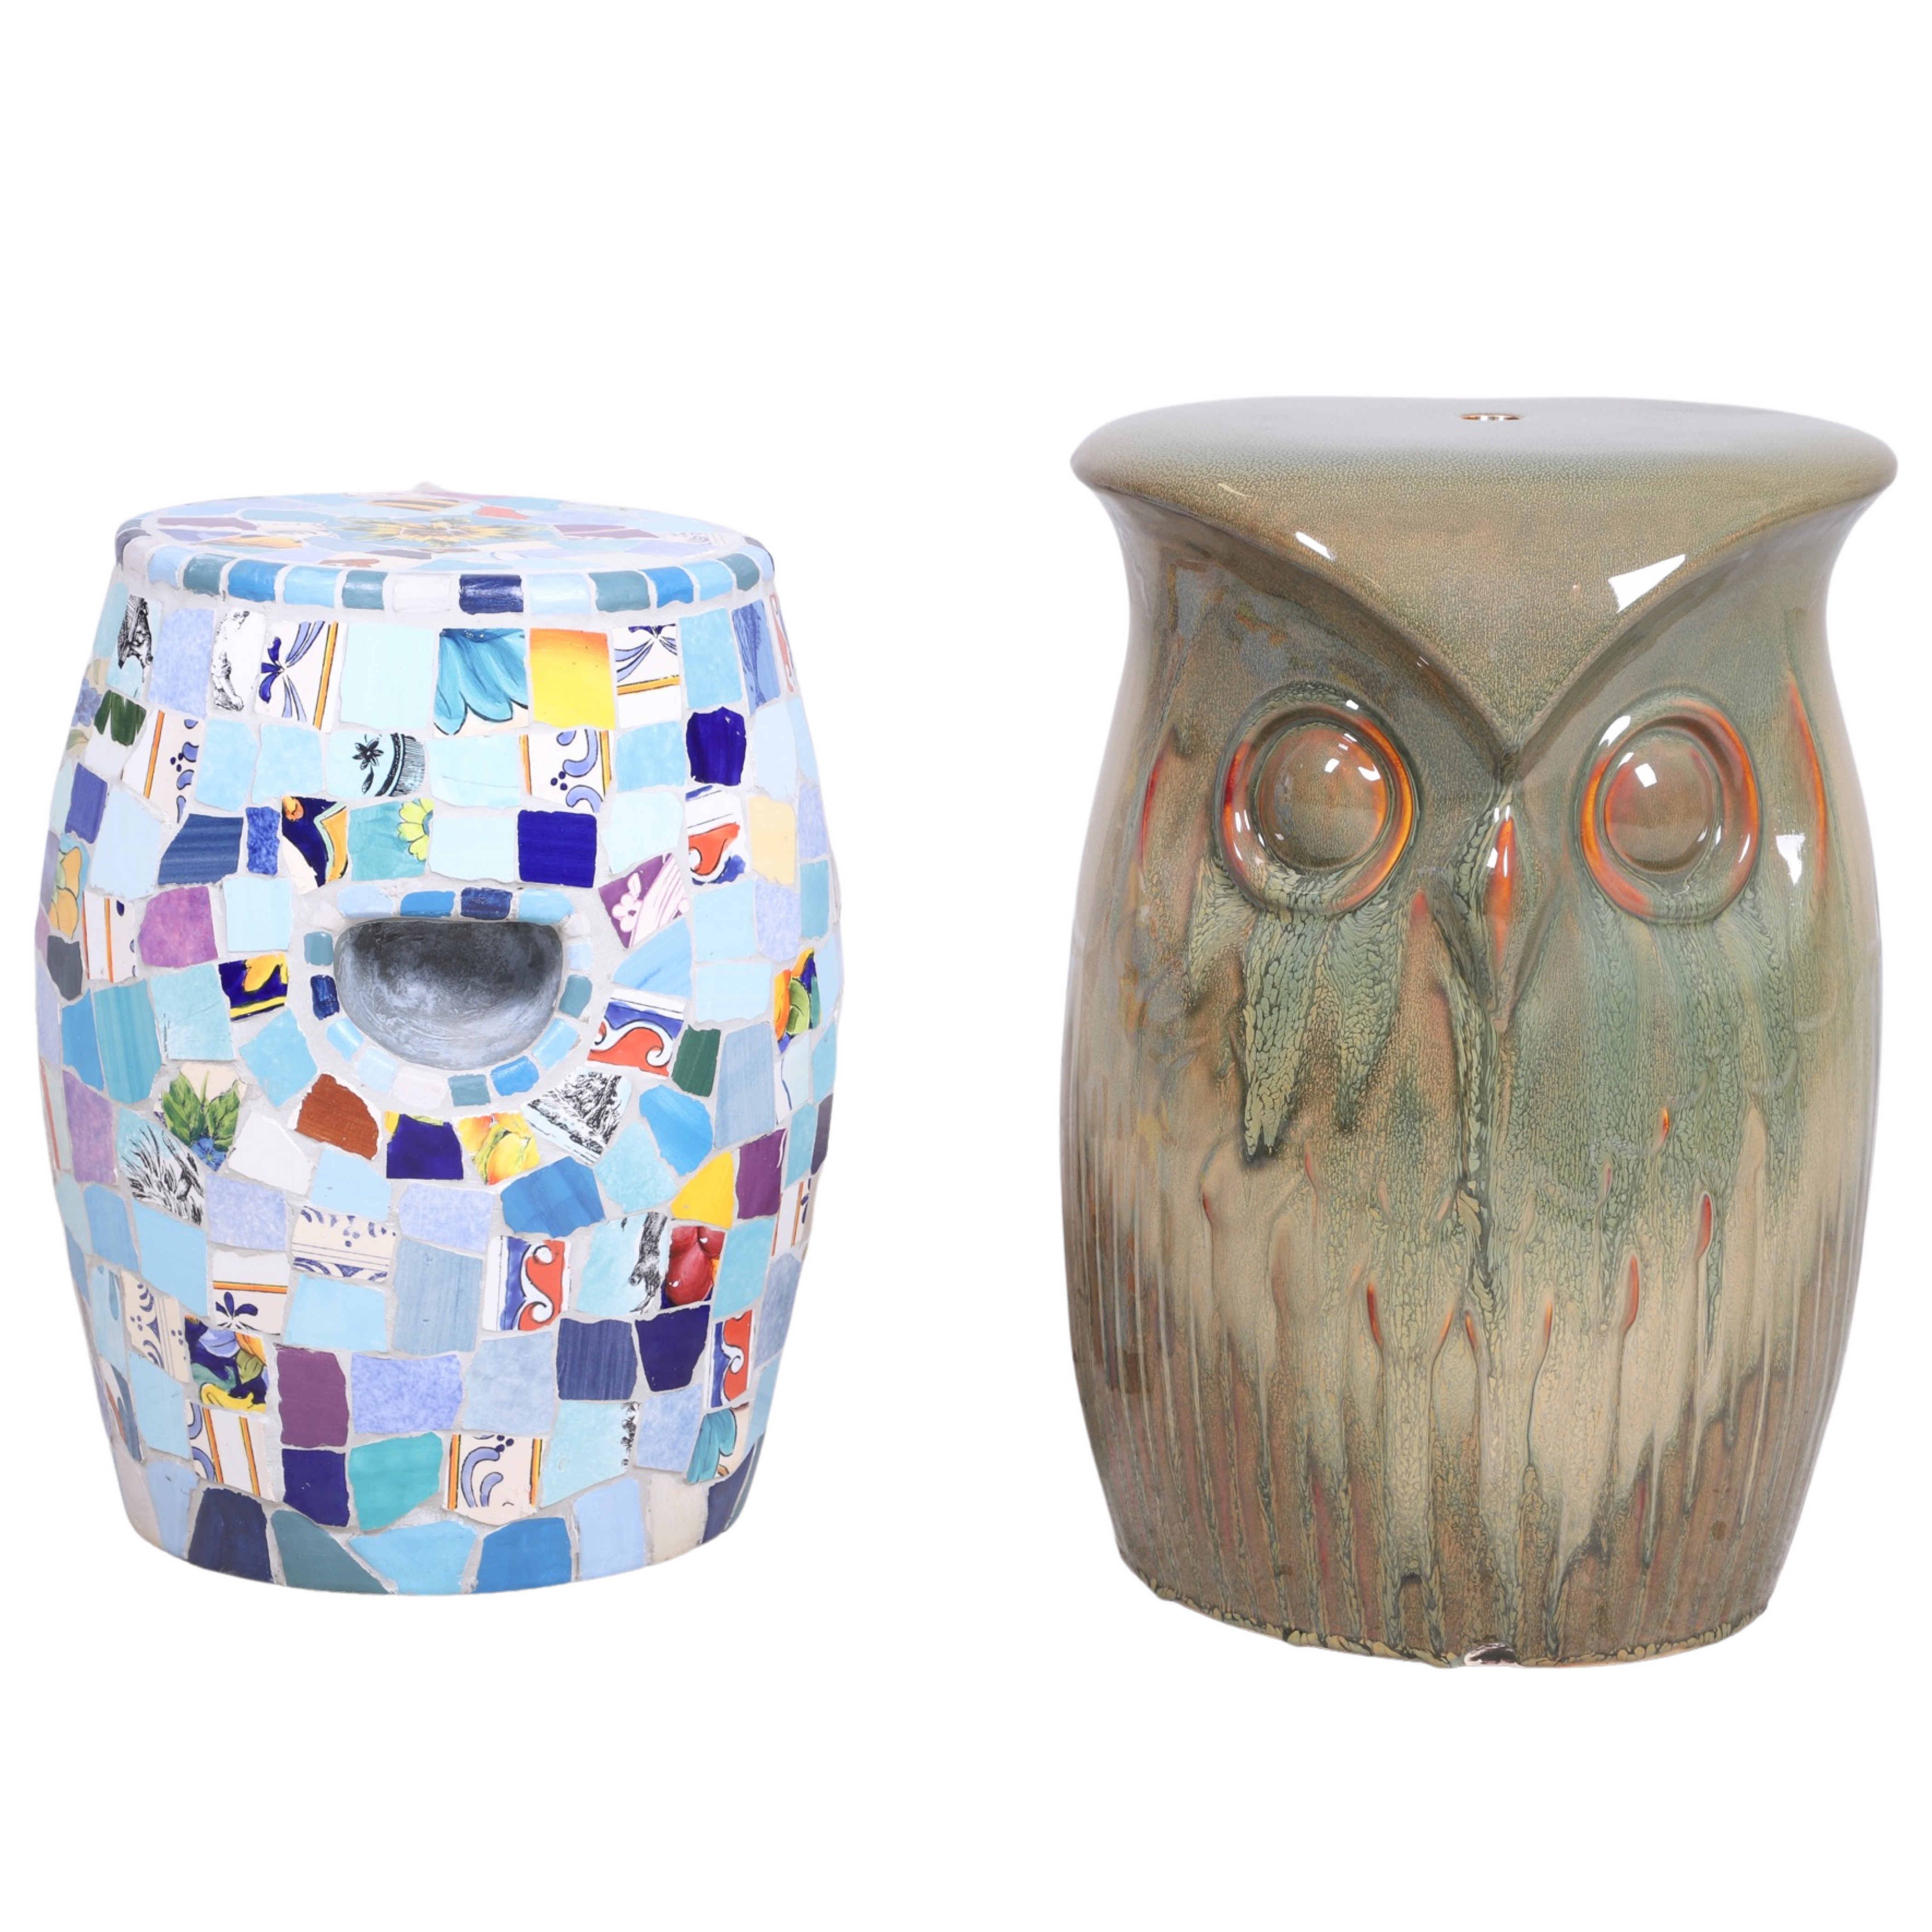 Glazed pottery owl garden seat,